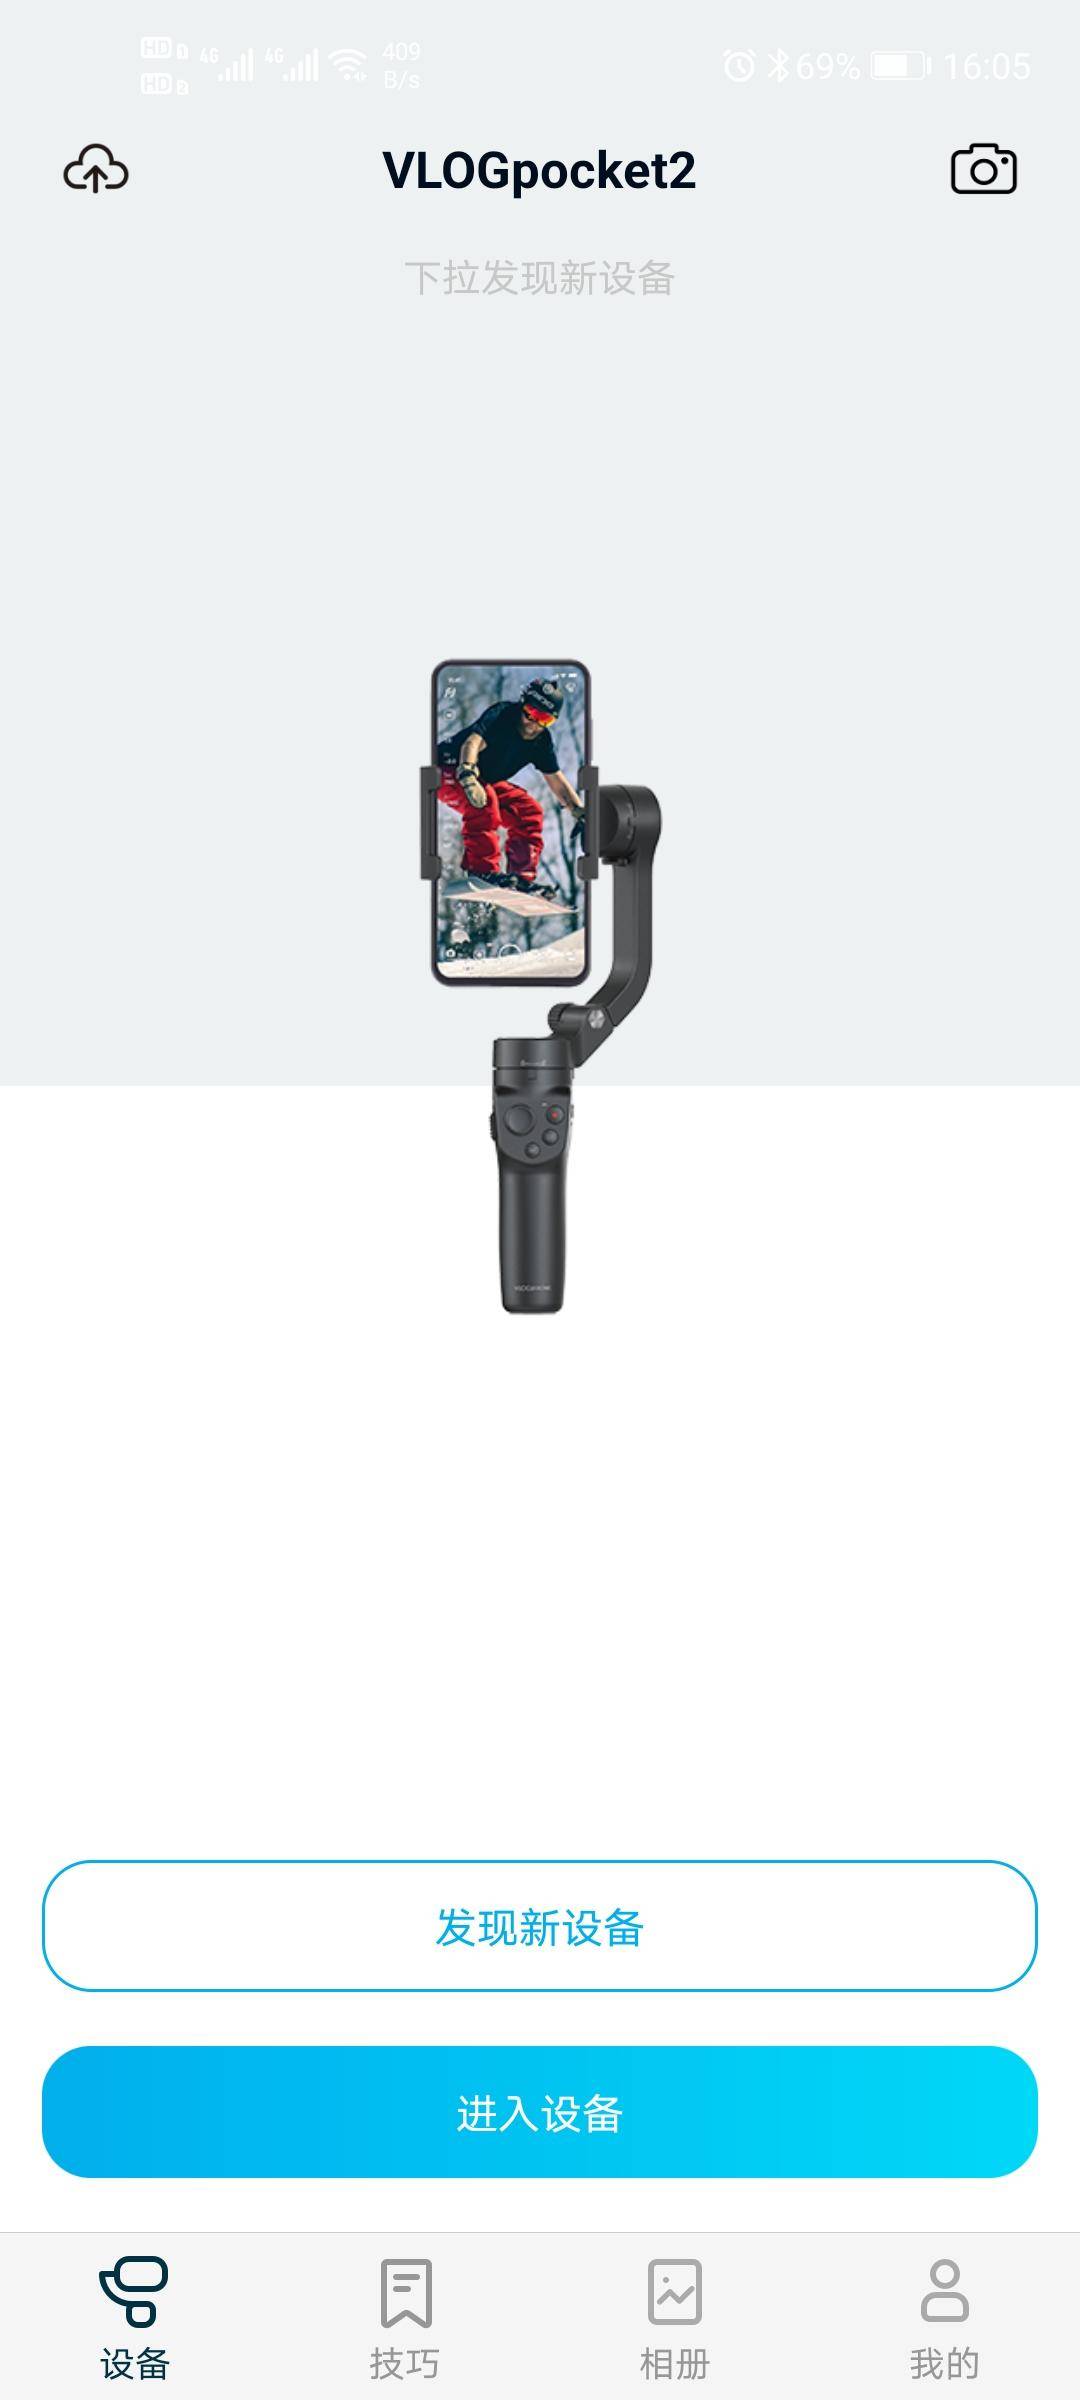 拍摄vlog利器，飞宇vlog pocket 2可折叠手机稳定器帮你拍